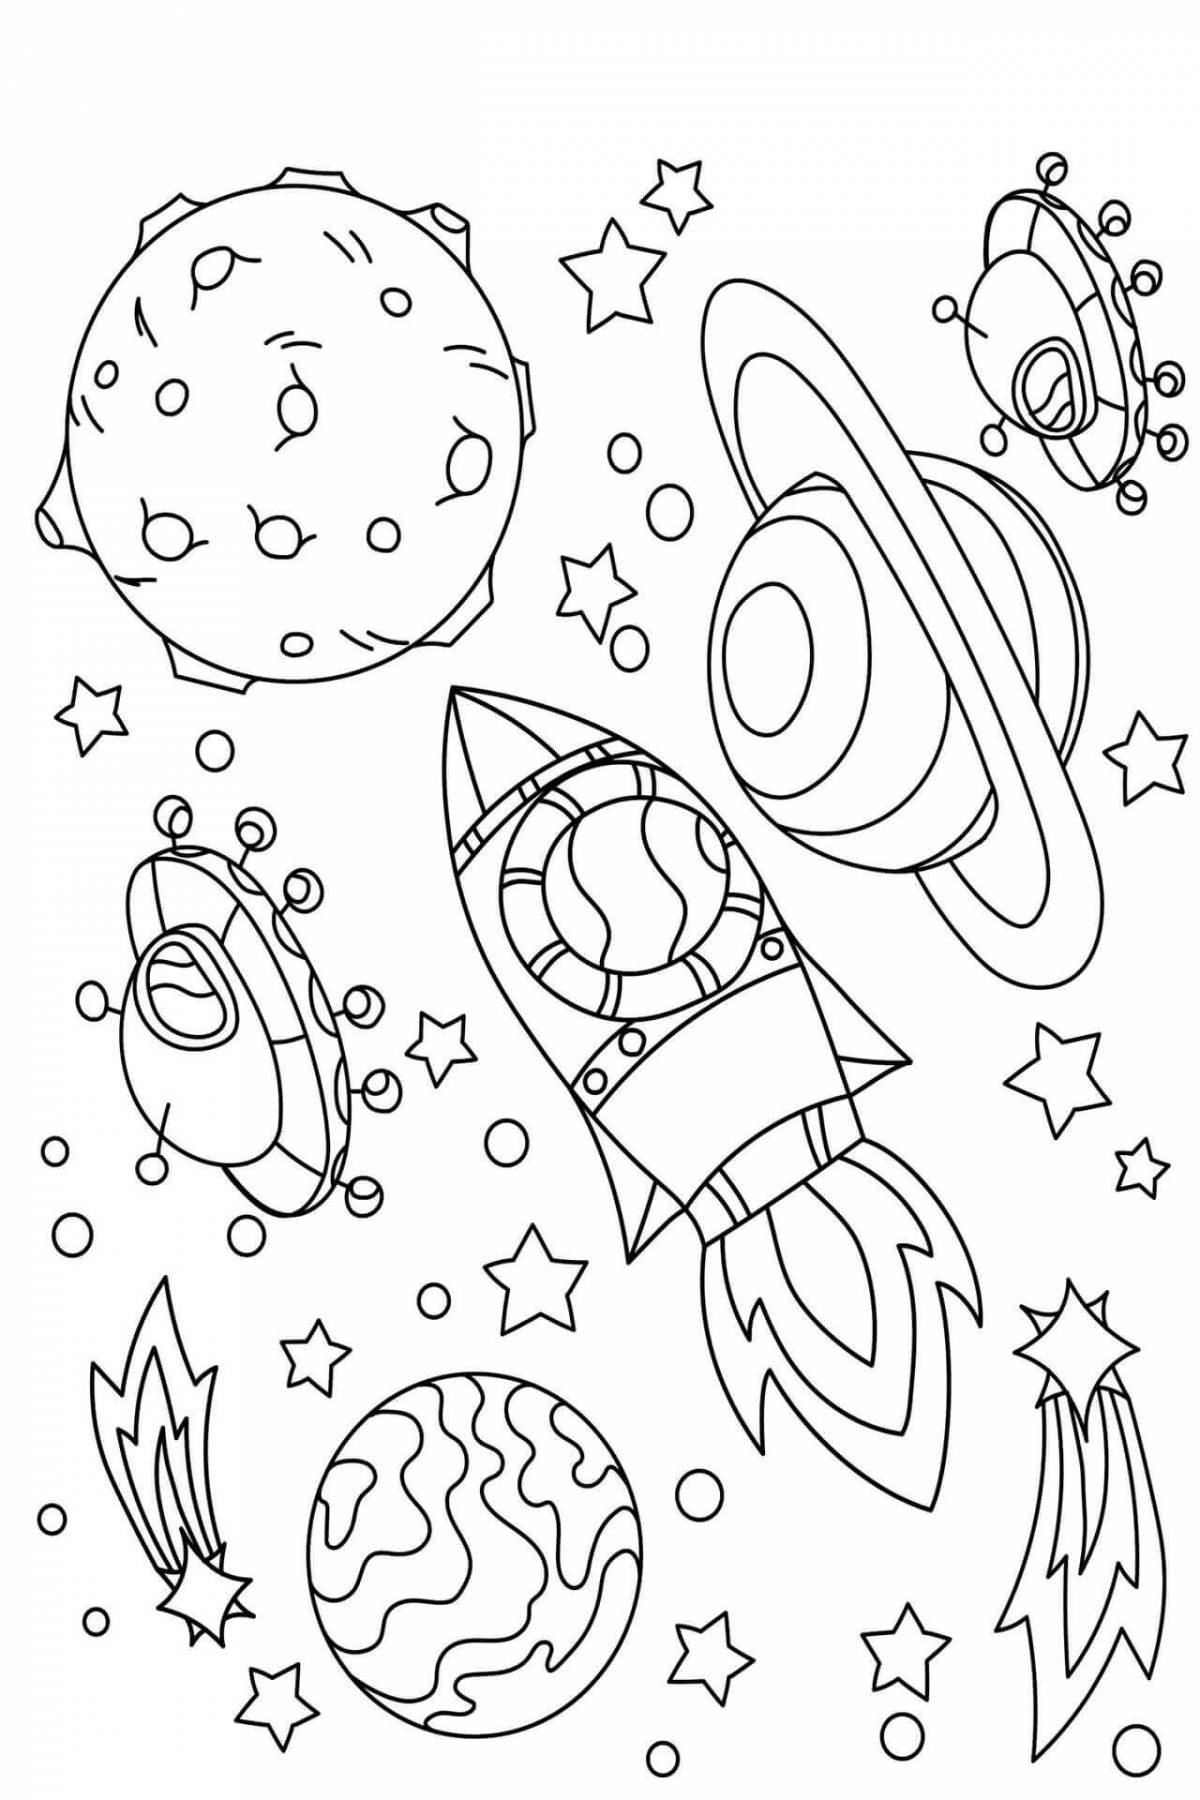 Раскраска космос 4 5 лет. Космос раскраска для детей. Раскраска космос для детей 6-7 лет. Раскраска. В космосе. Раскраски космос для детей 4-5 лет.